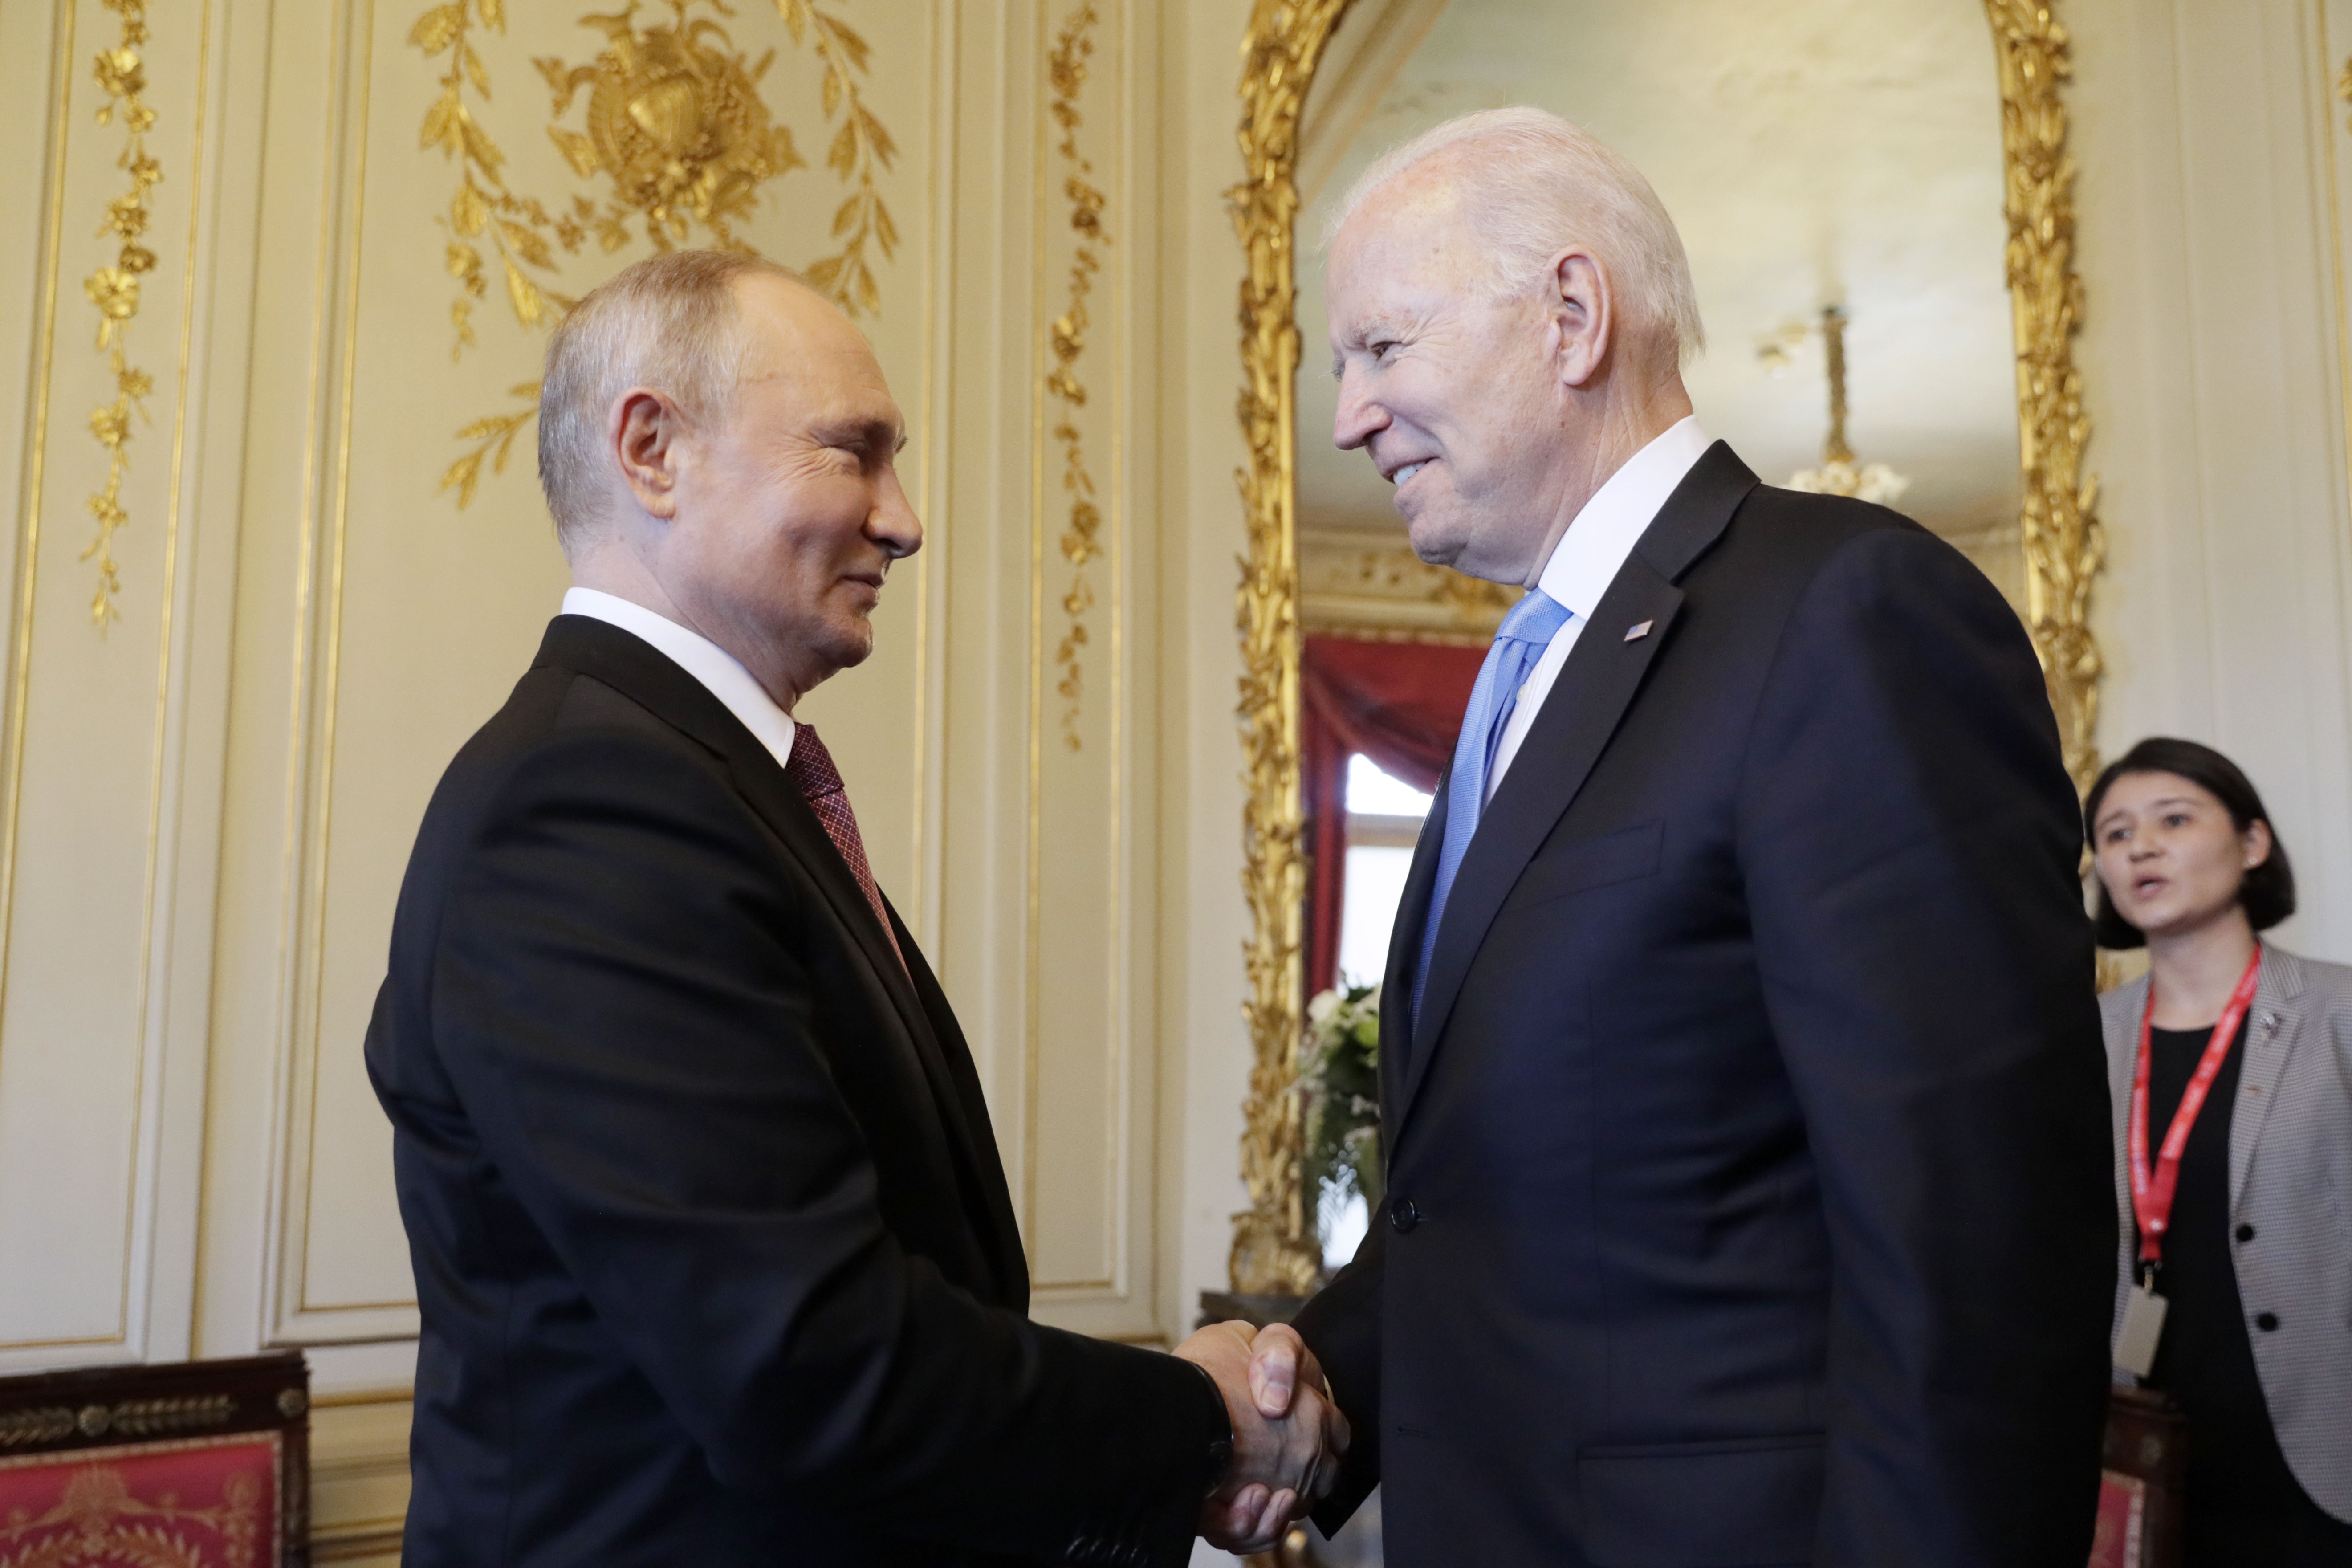 Putin and Biden shake hands